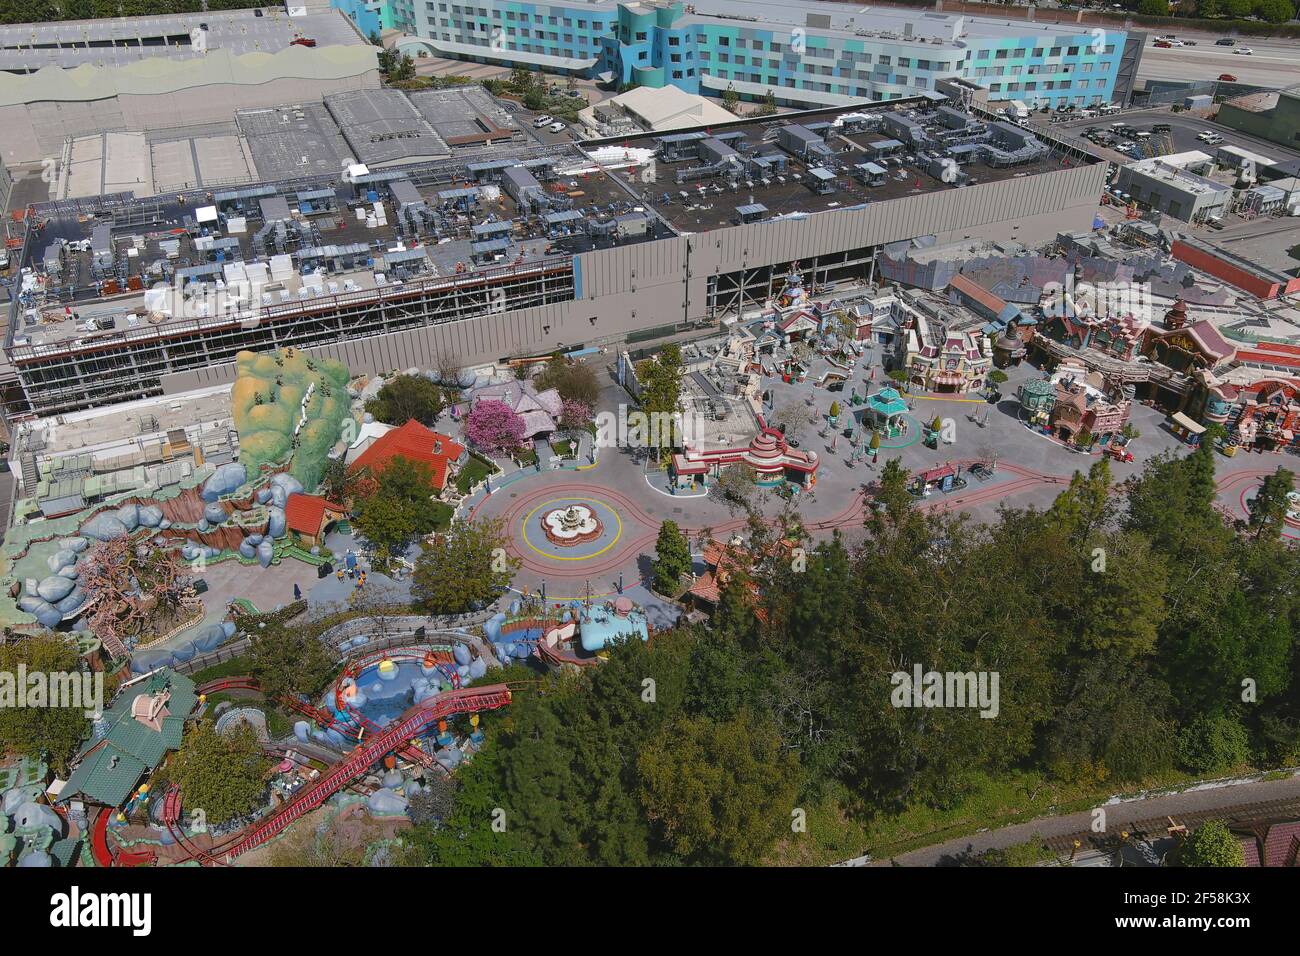 Une vue aérienne de Mickey's Toontown à Disneyland Park, le mercredi 24 mars 2021, à Anaheim, Calif. Banque D'Images